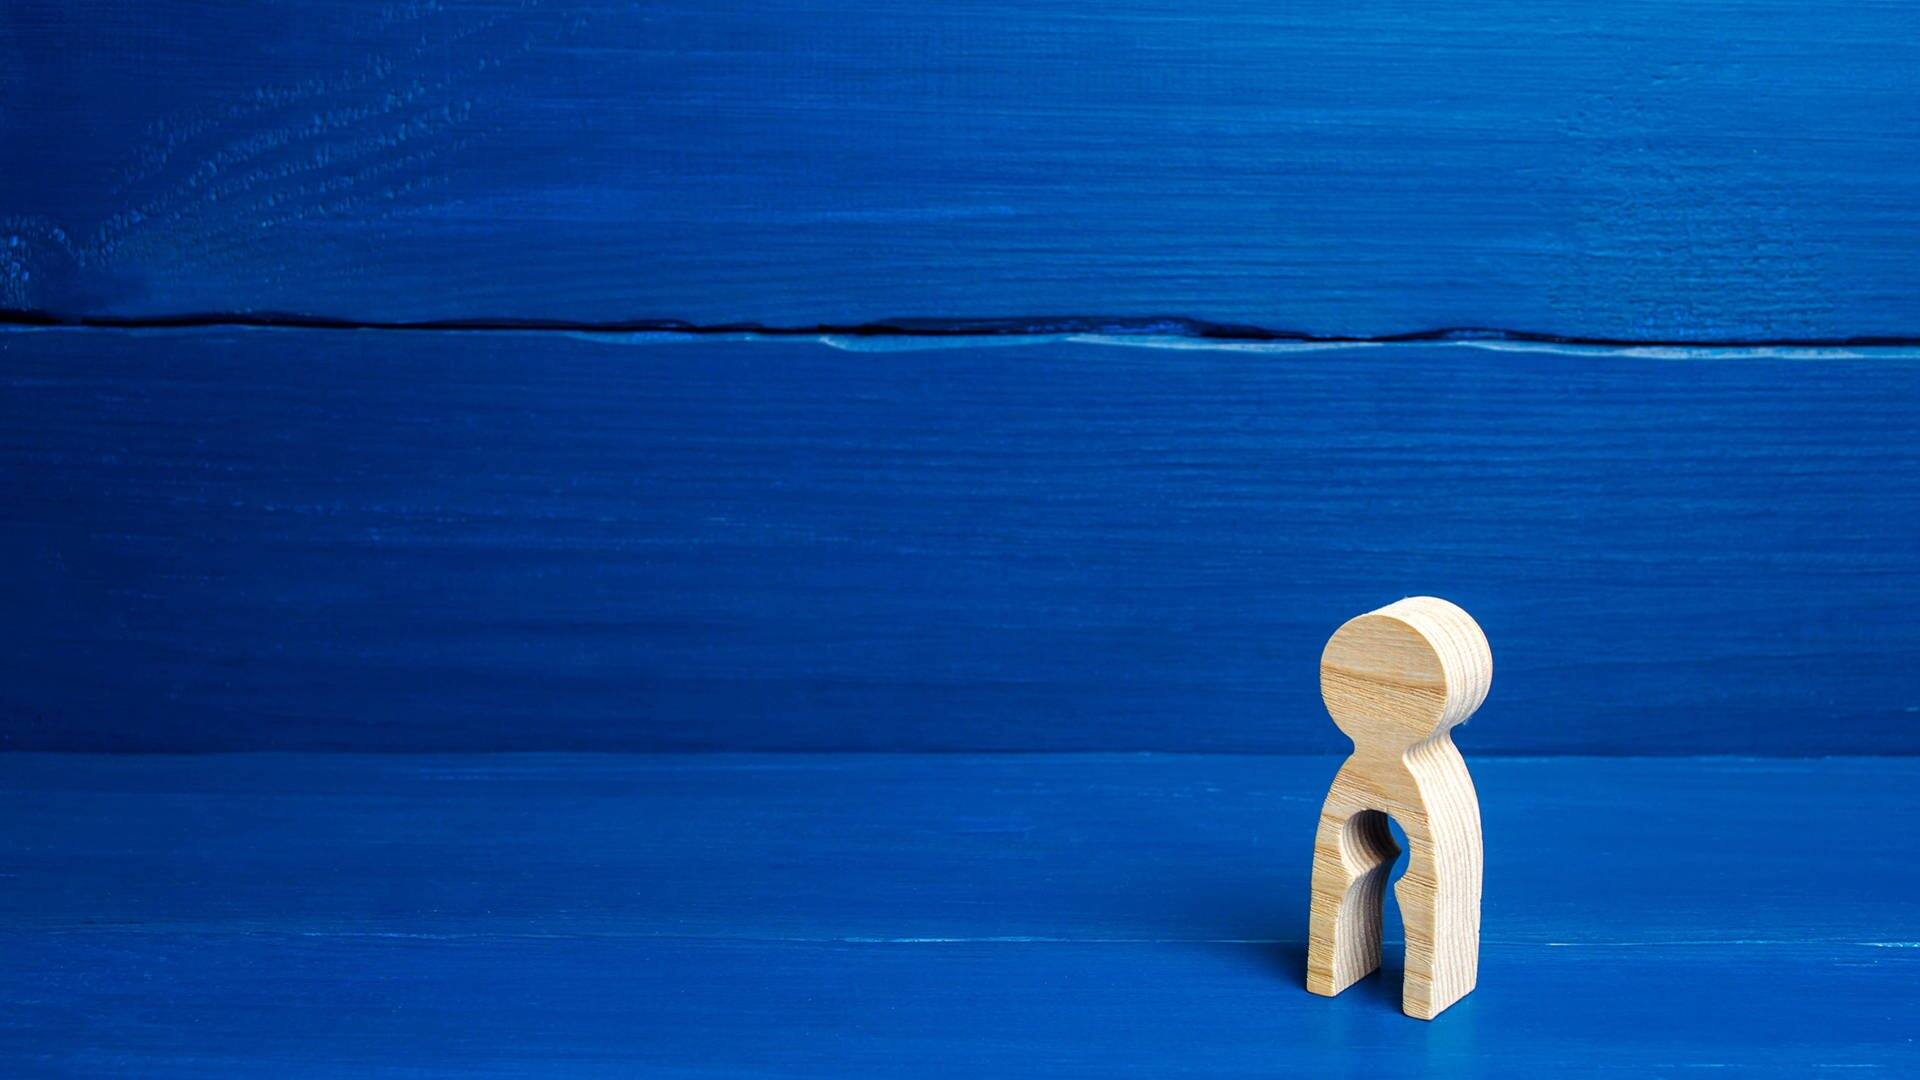 Figur mit ausgestanzter Form eines Kindes vor blauem Hintergrund (Foto: IMAGO, IMAGO / YAY Images)